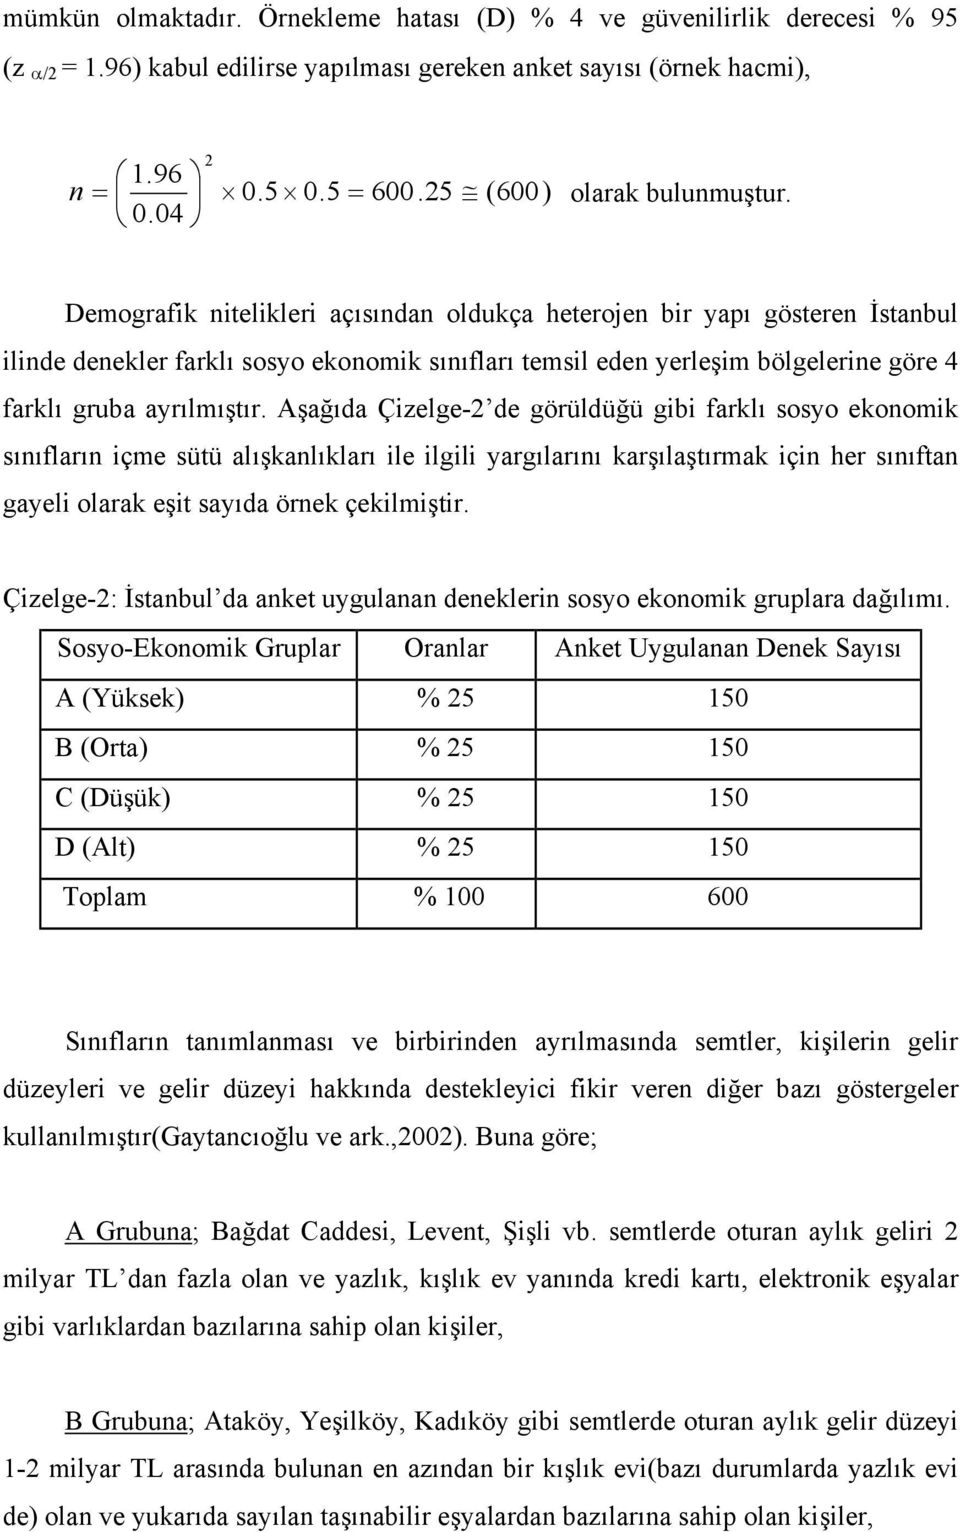 04 Demografik nitelikleri açısından oldukça heterojen bir yapı gösteren İstanbul ilinde denekler farklı sosyo ekonomik sınıfları temsil eden yerleşim bölgelerine göre 4 farklı gruba ayrılmıştır.